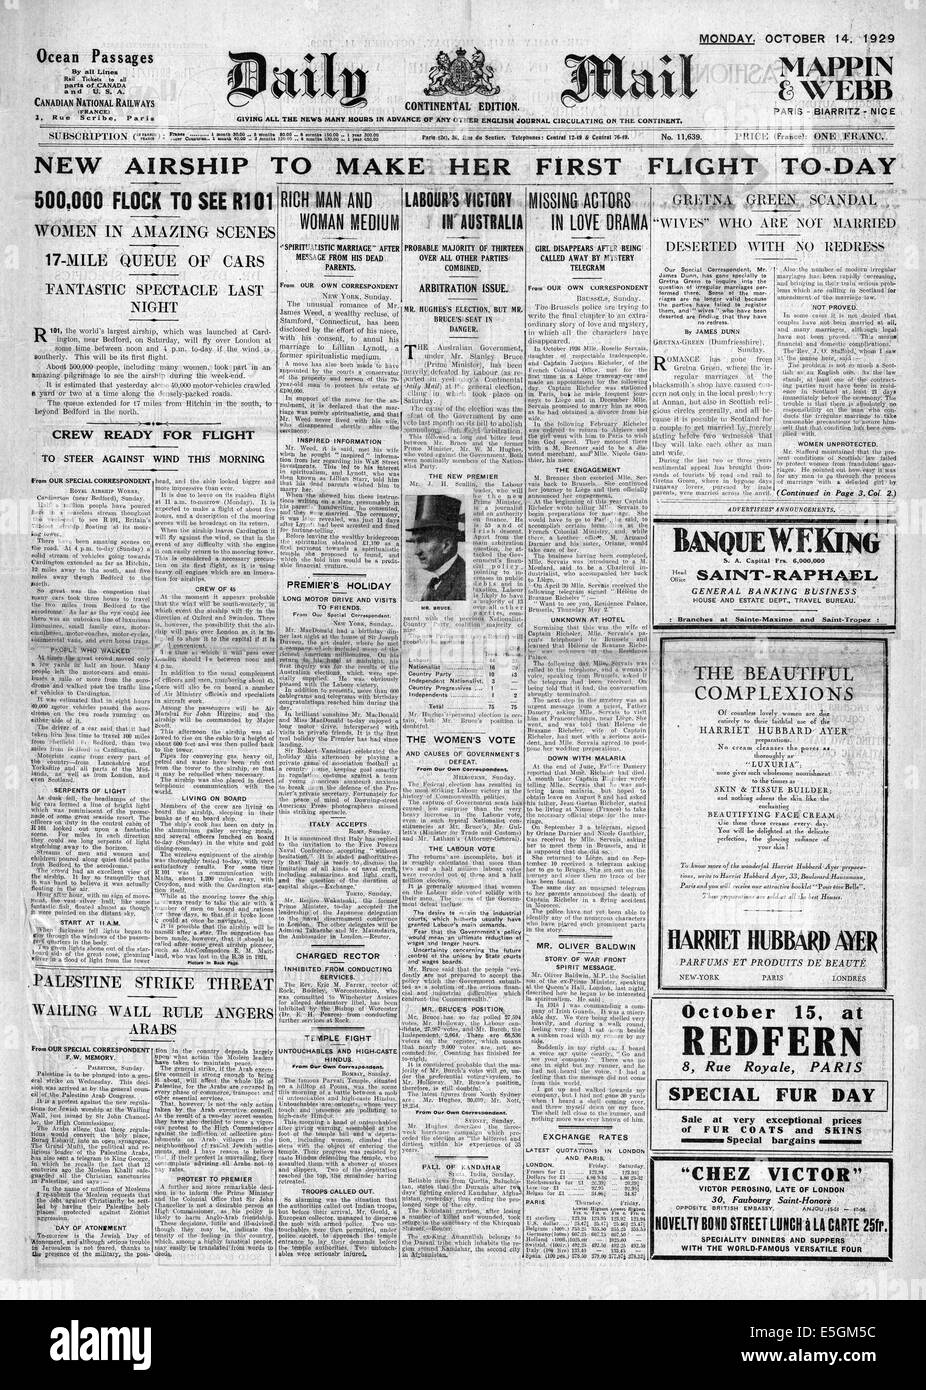 1929 Daily Mail pagina anteriore segnalato il volo inaugurale del dirigibile R101 Foto Stock